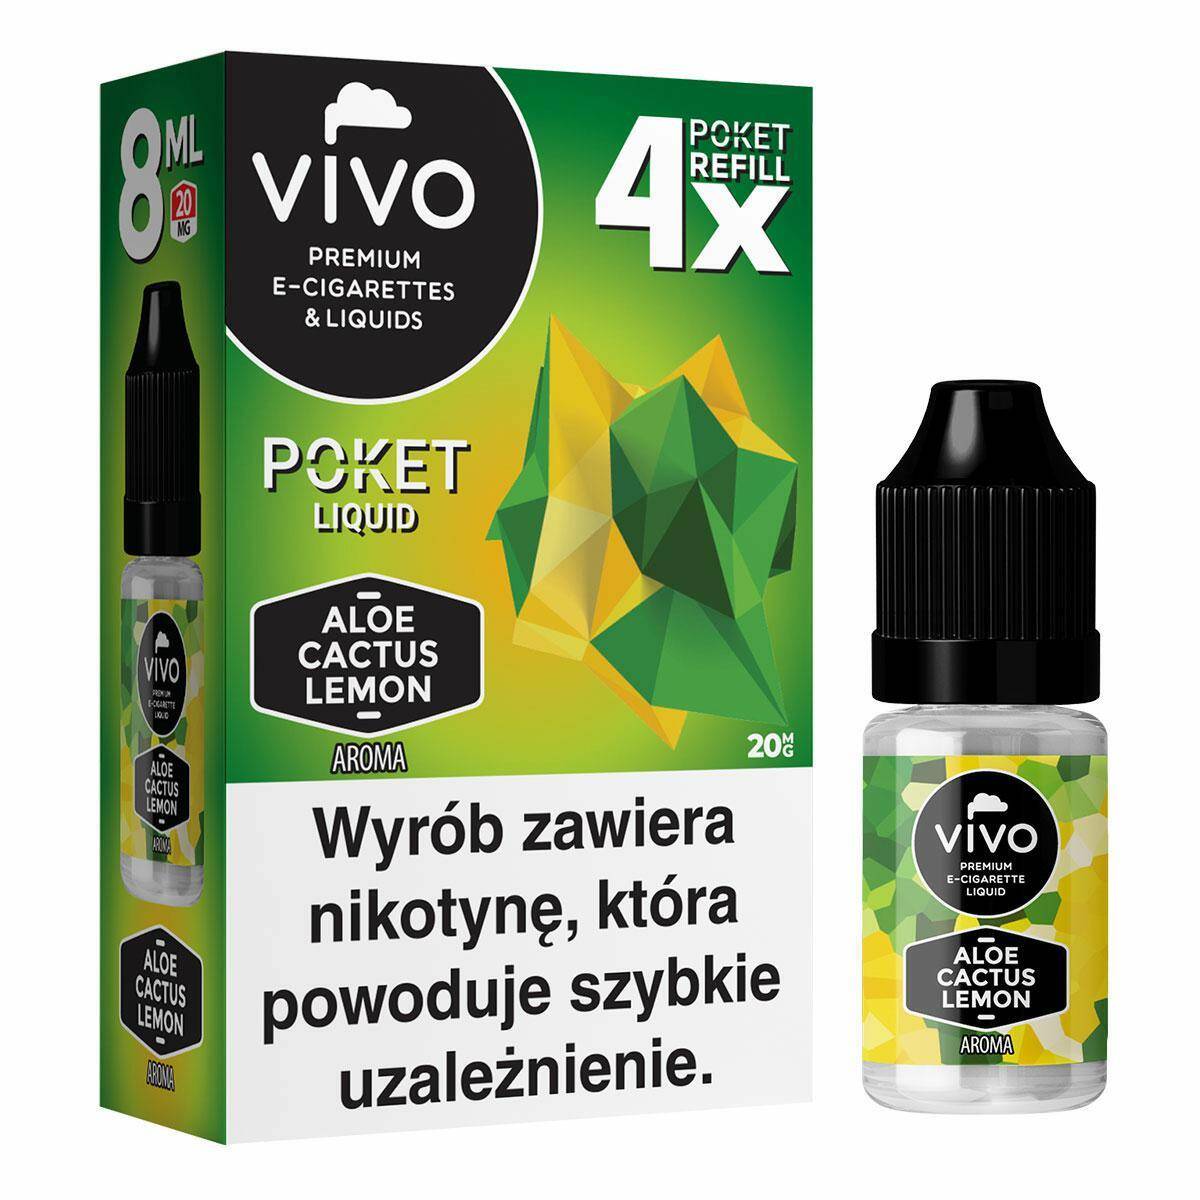 E-liquids VIVO POKET- Aloe Cactus Lemon x4/20mg/8ml